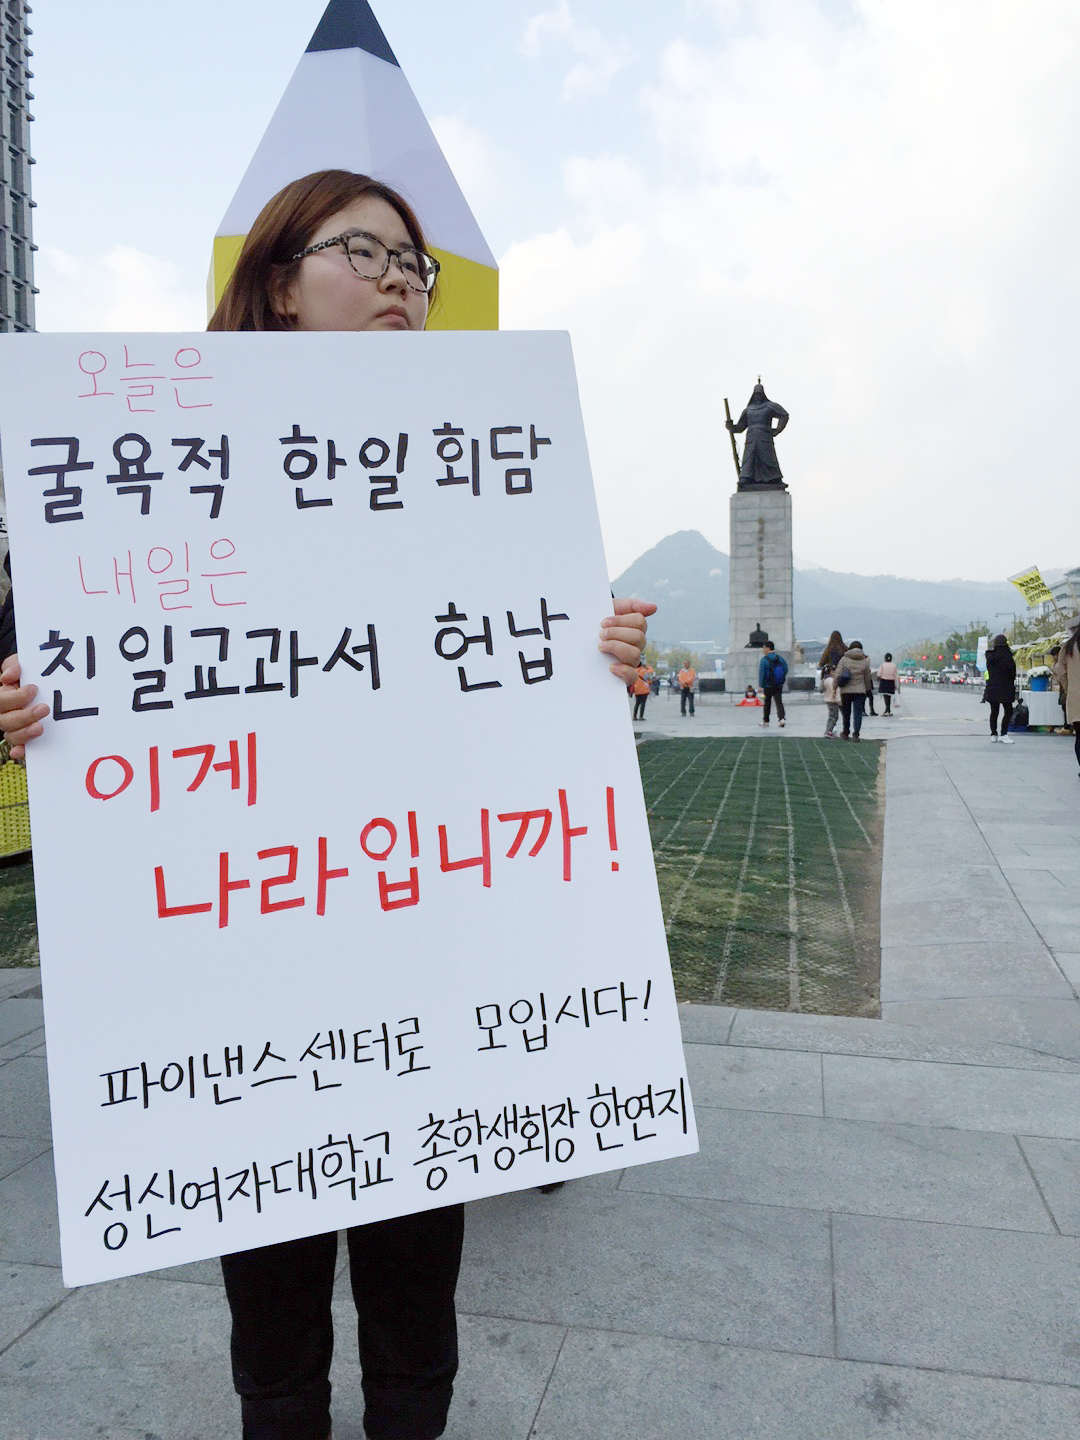 한일정상회담 직후, 국정교과서 확정고시 전날인 지난 2일의 모습. 성신여대 한연지 총학생회장의 광화문 광장 1인 시위.